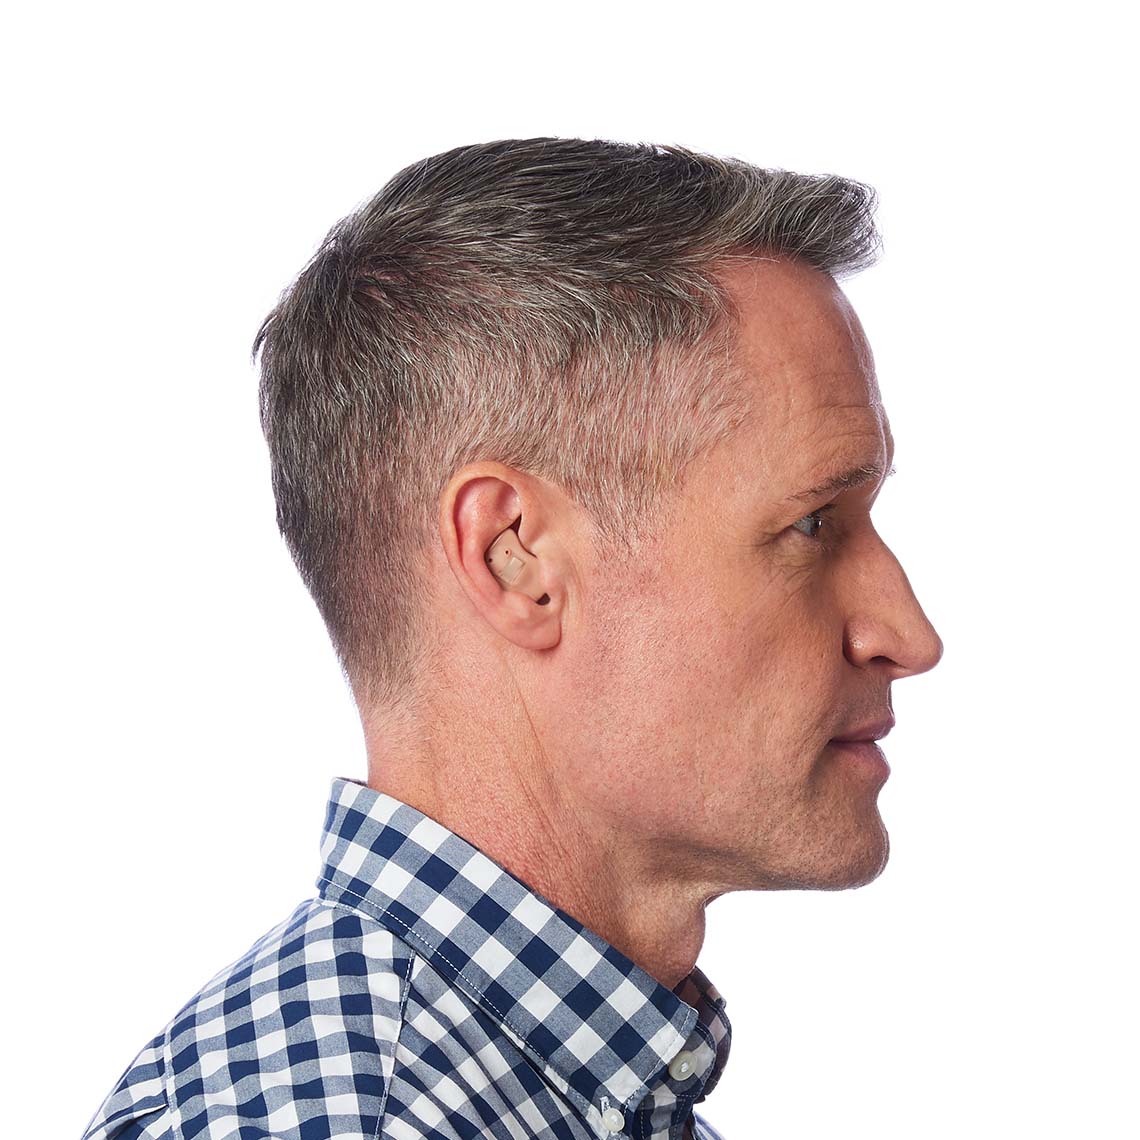 An ITE hearing aid shown in a man's ear